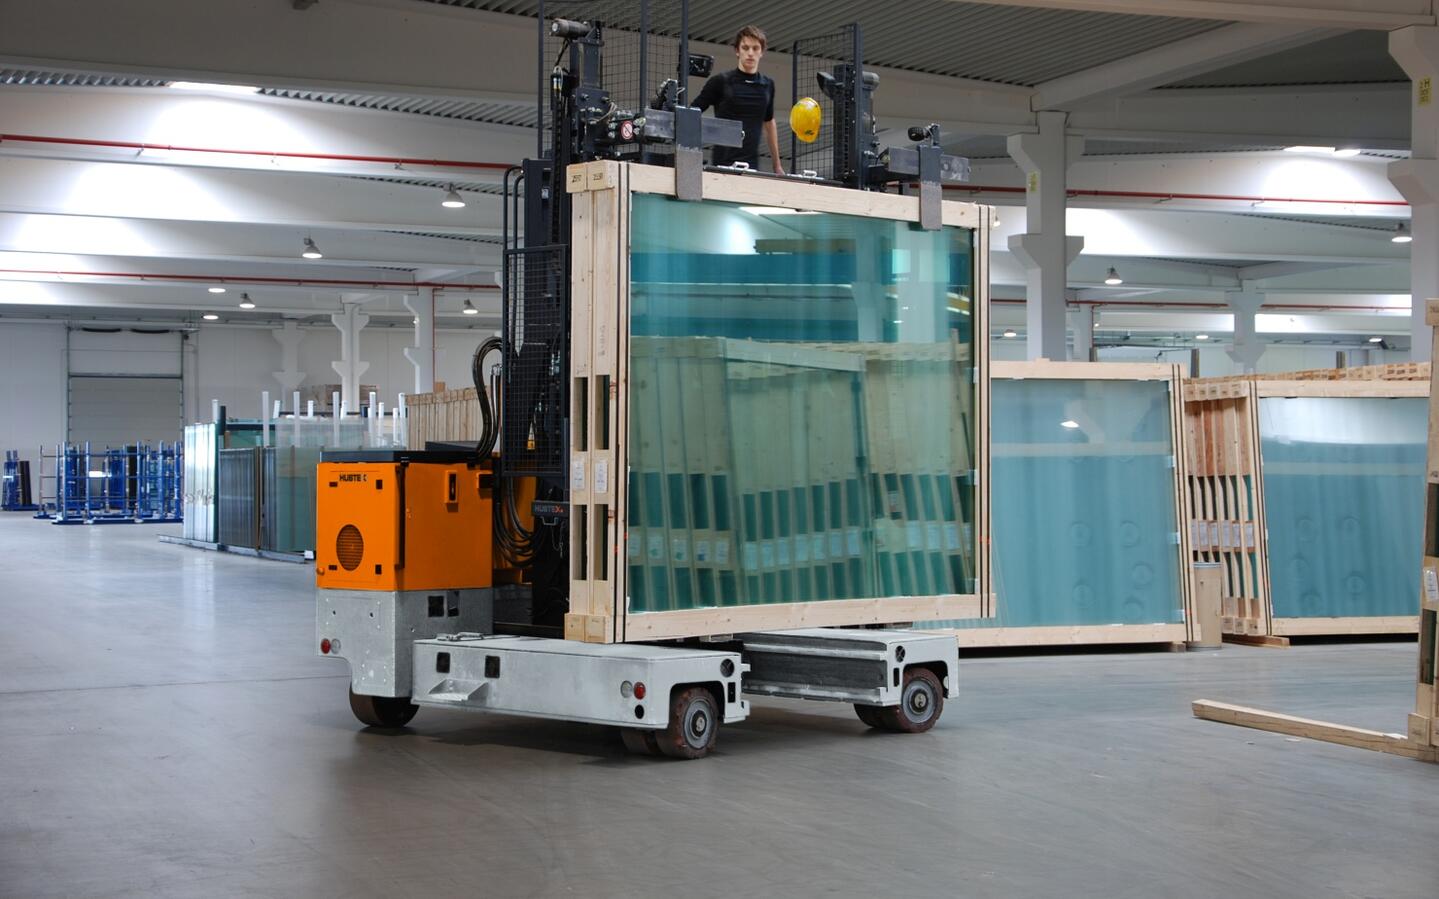 A empilhadeira lateral multidirecional da HUBTEX no transporte de cavaletes de vidro no armazém